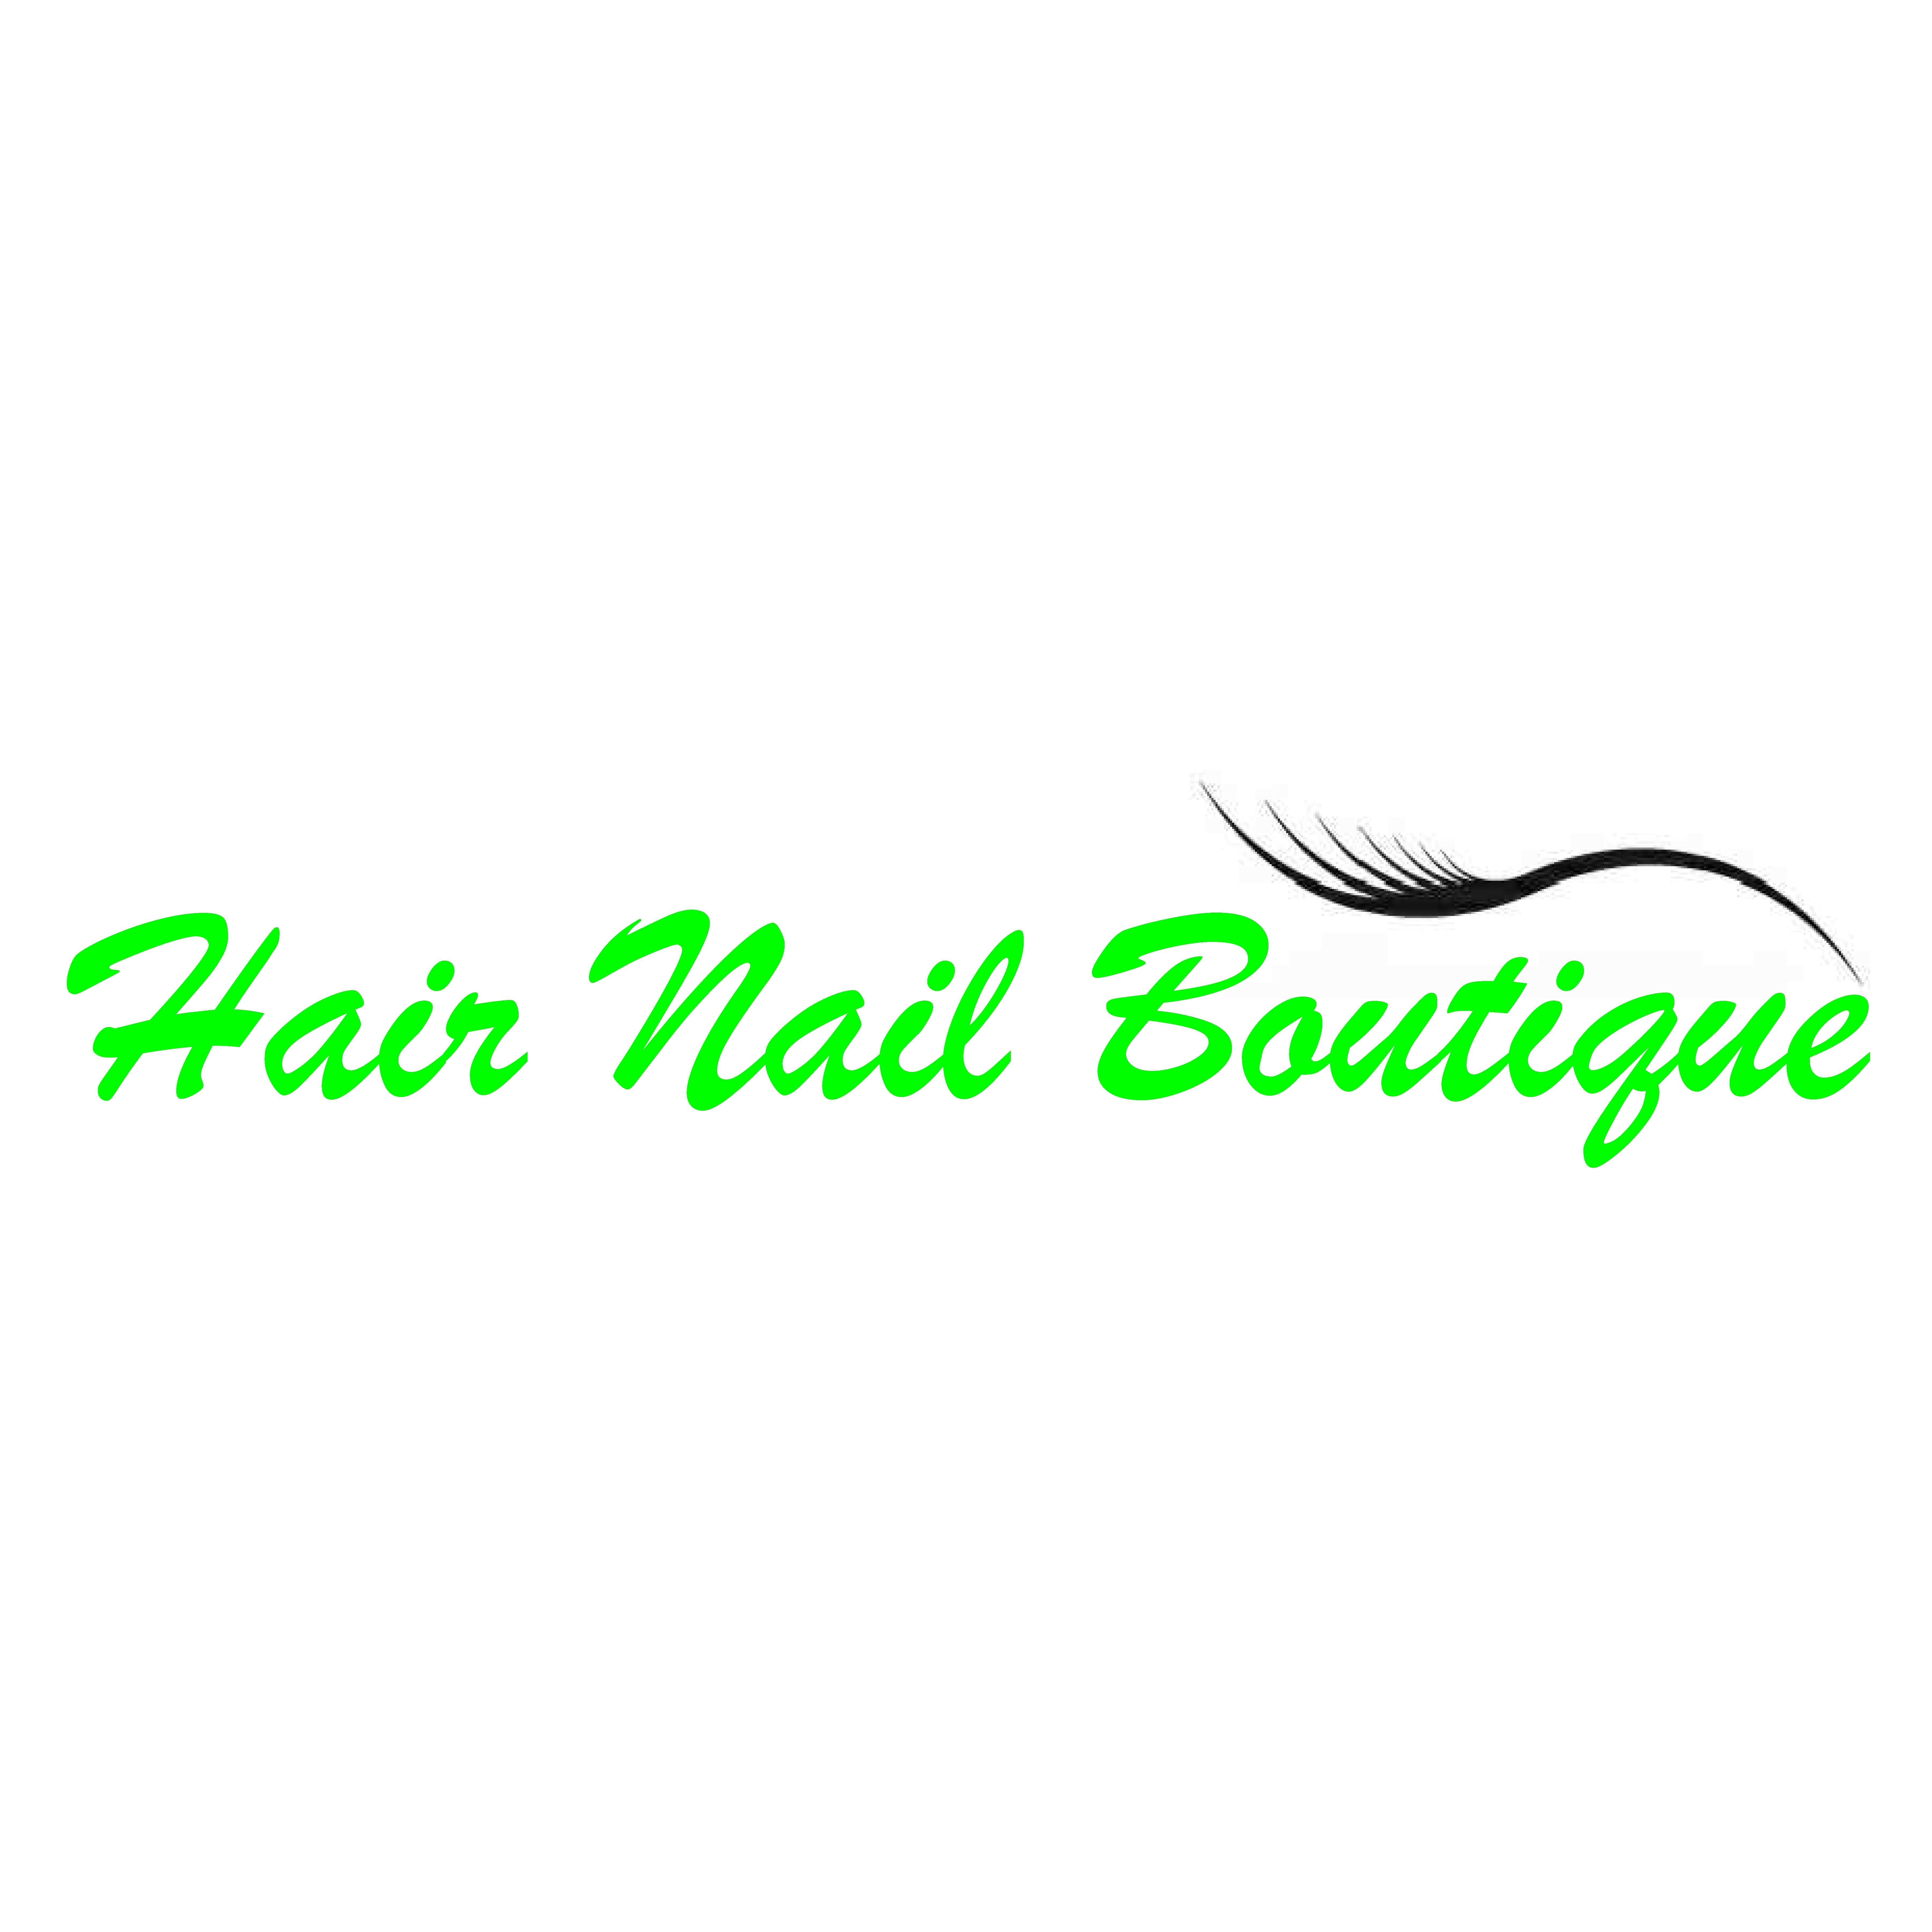 Hair Nail Boutique